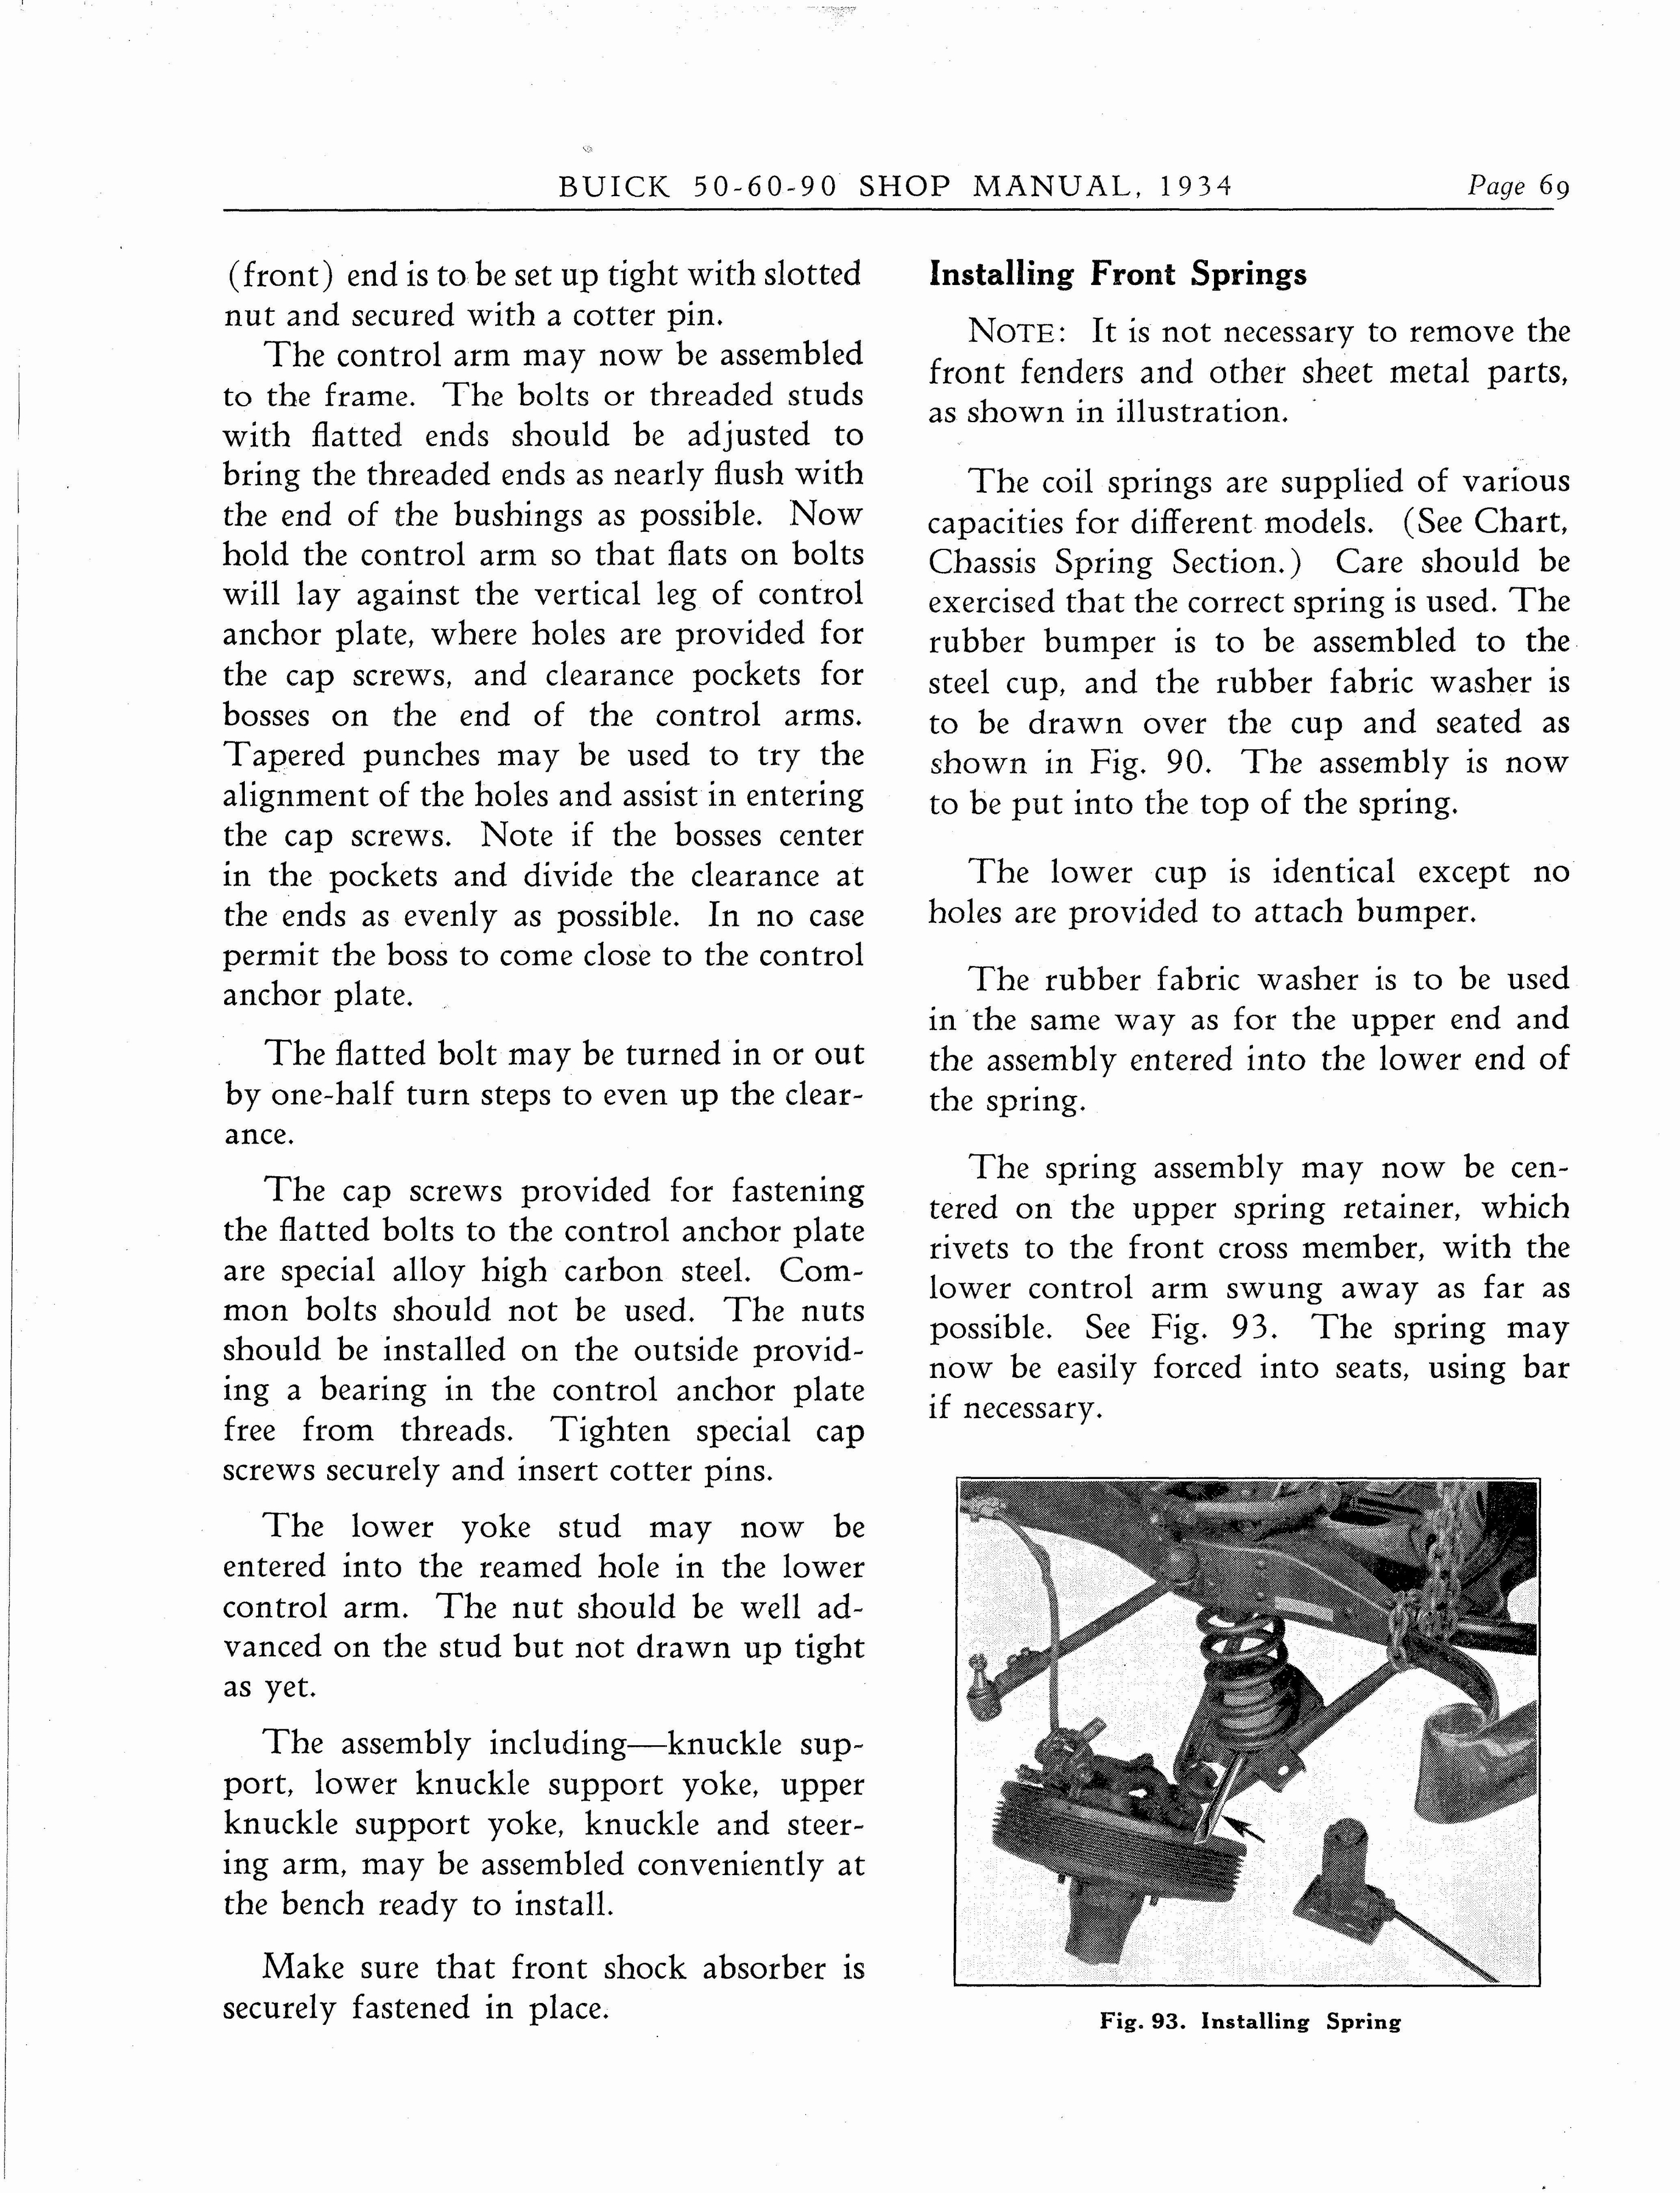 n_1934 Buick Series 50-60-90 Shop Manual_Page_070.jpg